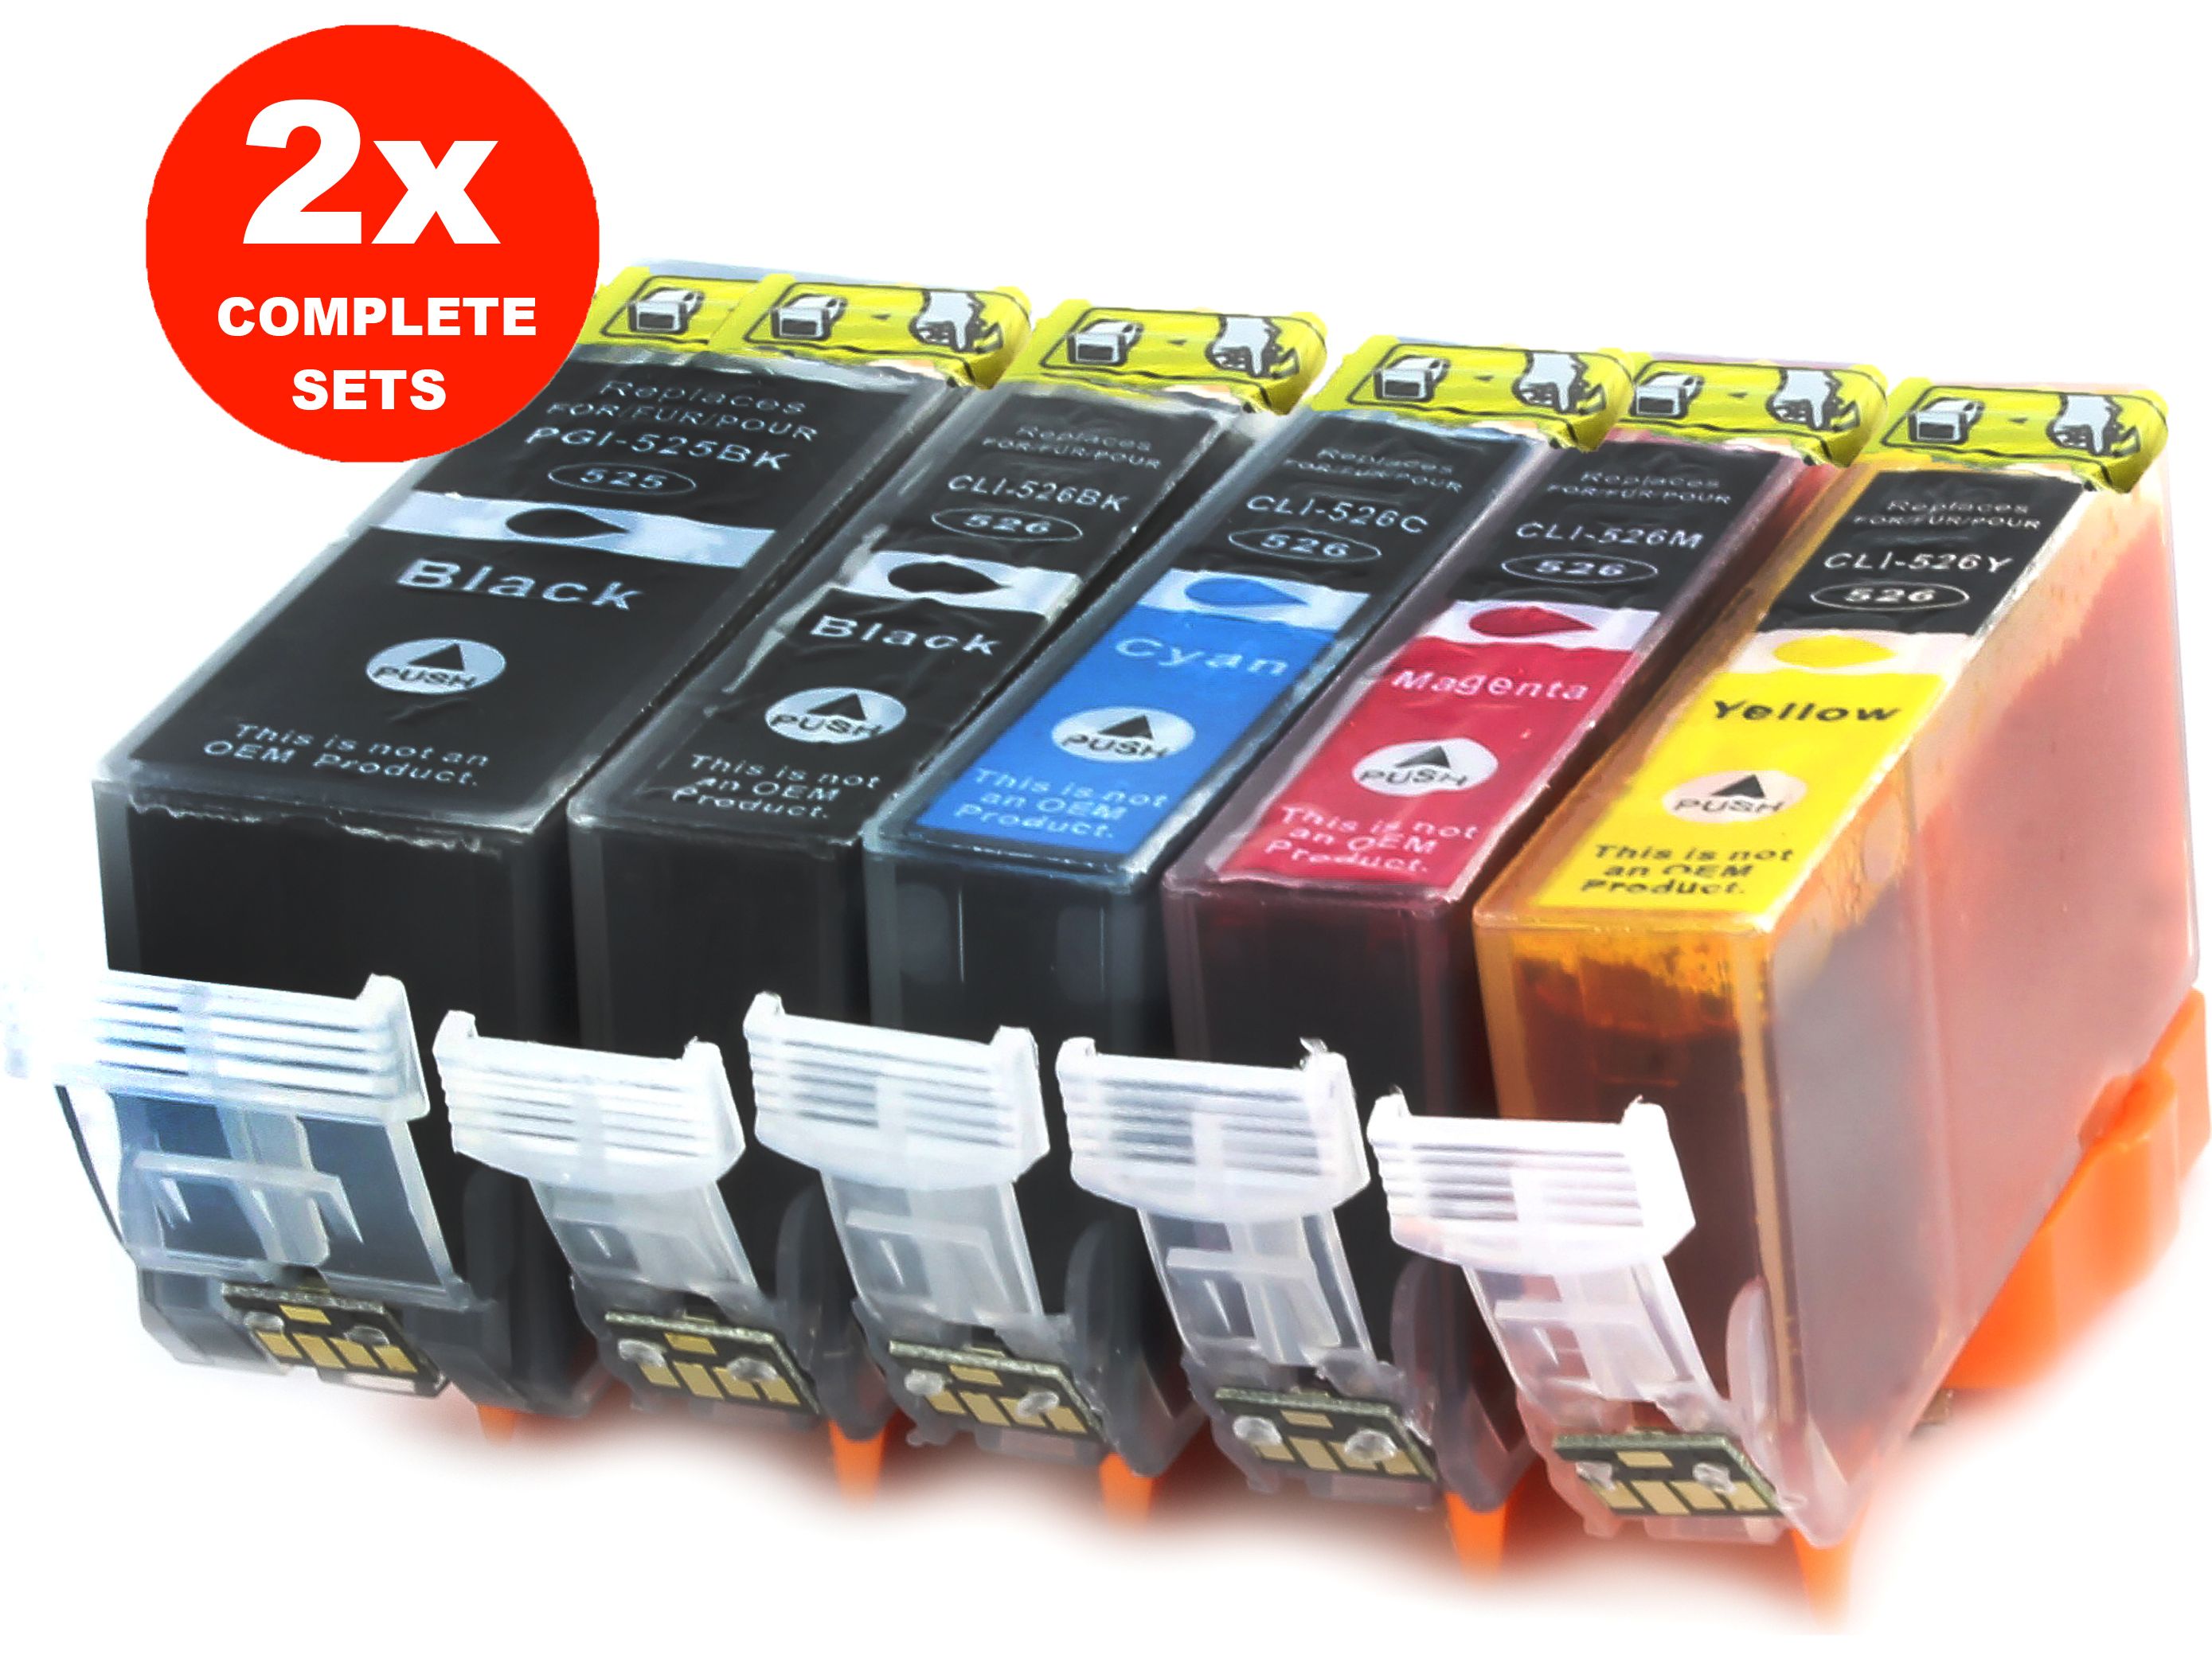 2x-cartridges-pgi-525-cli-526-canon